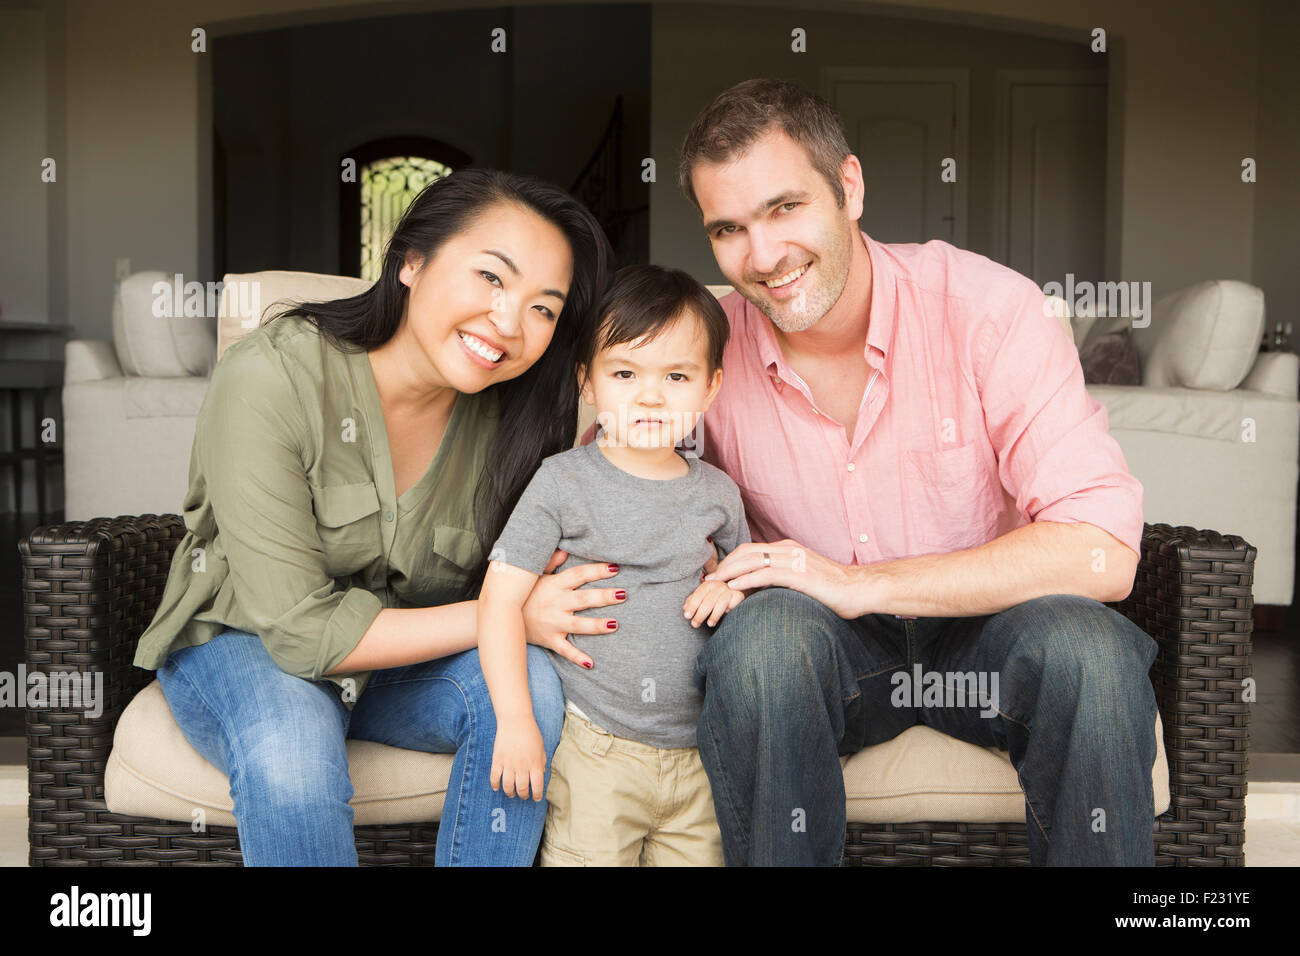 Lächeln Mann und Frau sitzen nebeneinander auf einem Sofa, posiert für ein Foto mit ihrem kleinen Sohn. Stockfoto